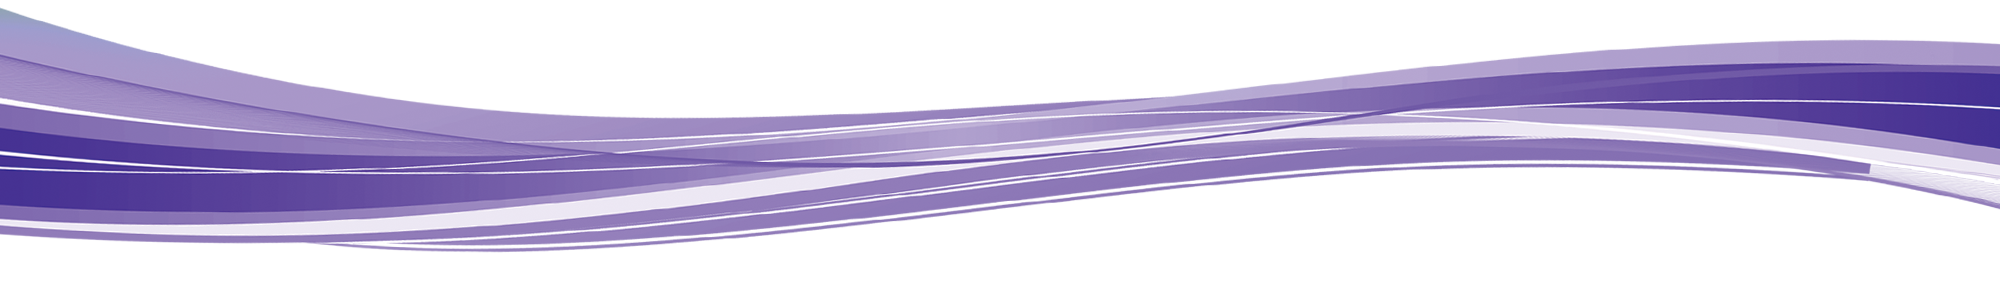 Purpurroter Wellen-transparenter Hintergrund